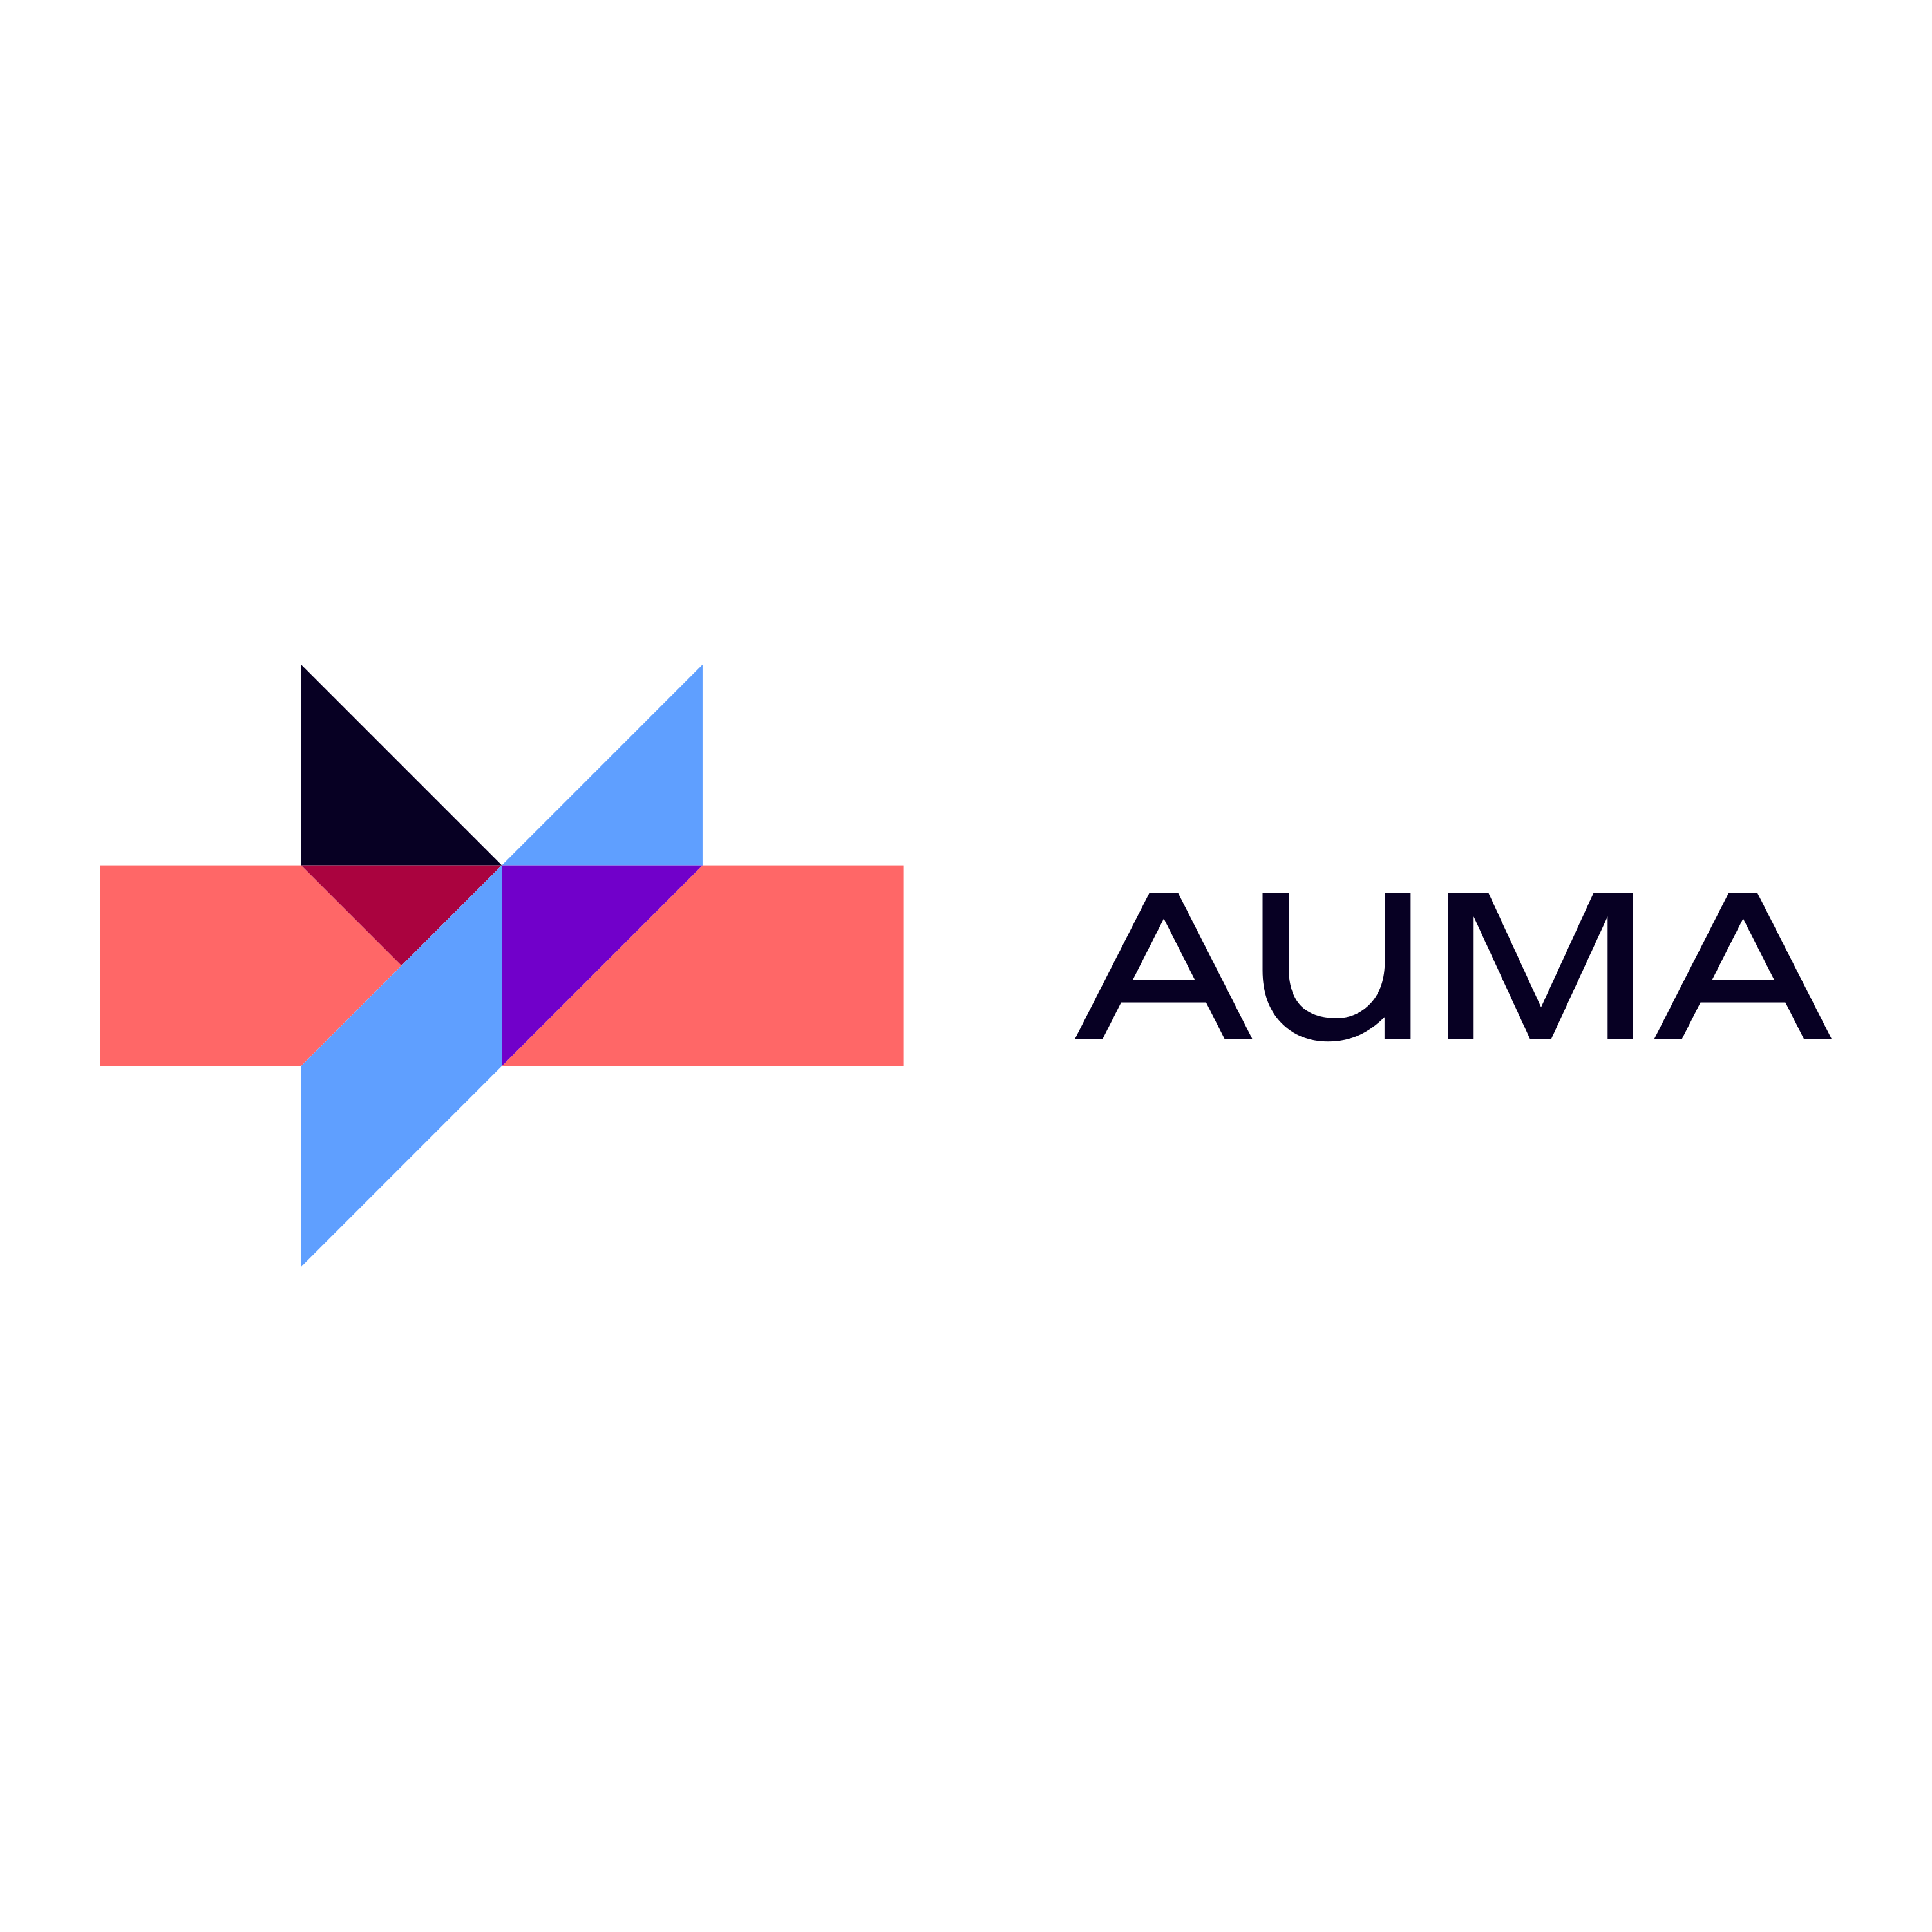 Auma Logo  Transparent Image